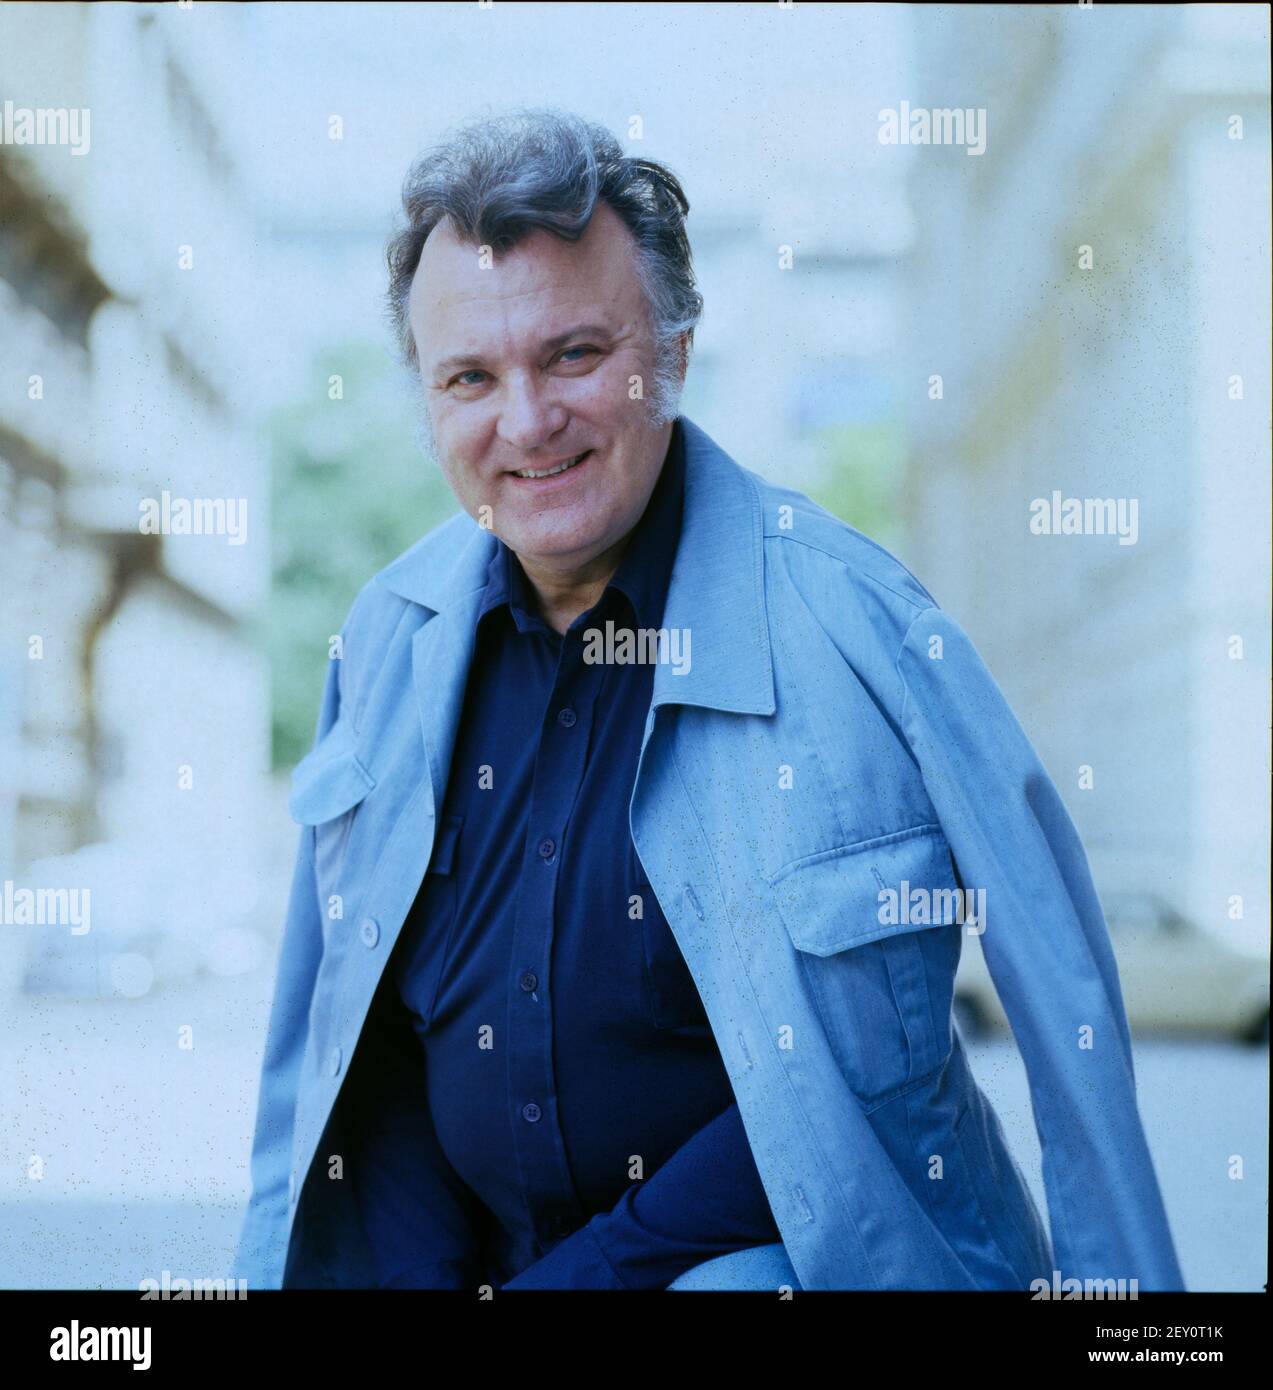 Nicolai Gedda, schwedischer Opernsänger und lyrischer Tenor, 1988. Nicolai Gedda, Swedish Opera singer and lyric tenor, 1988. Stock Photo